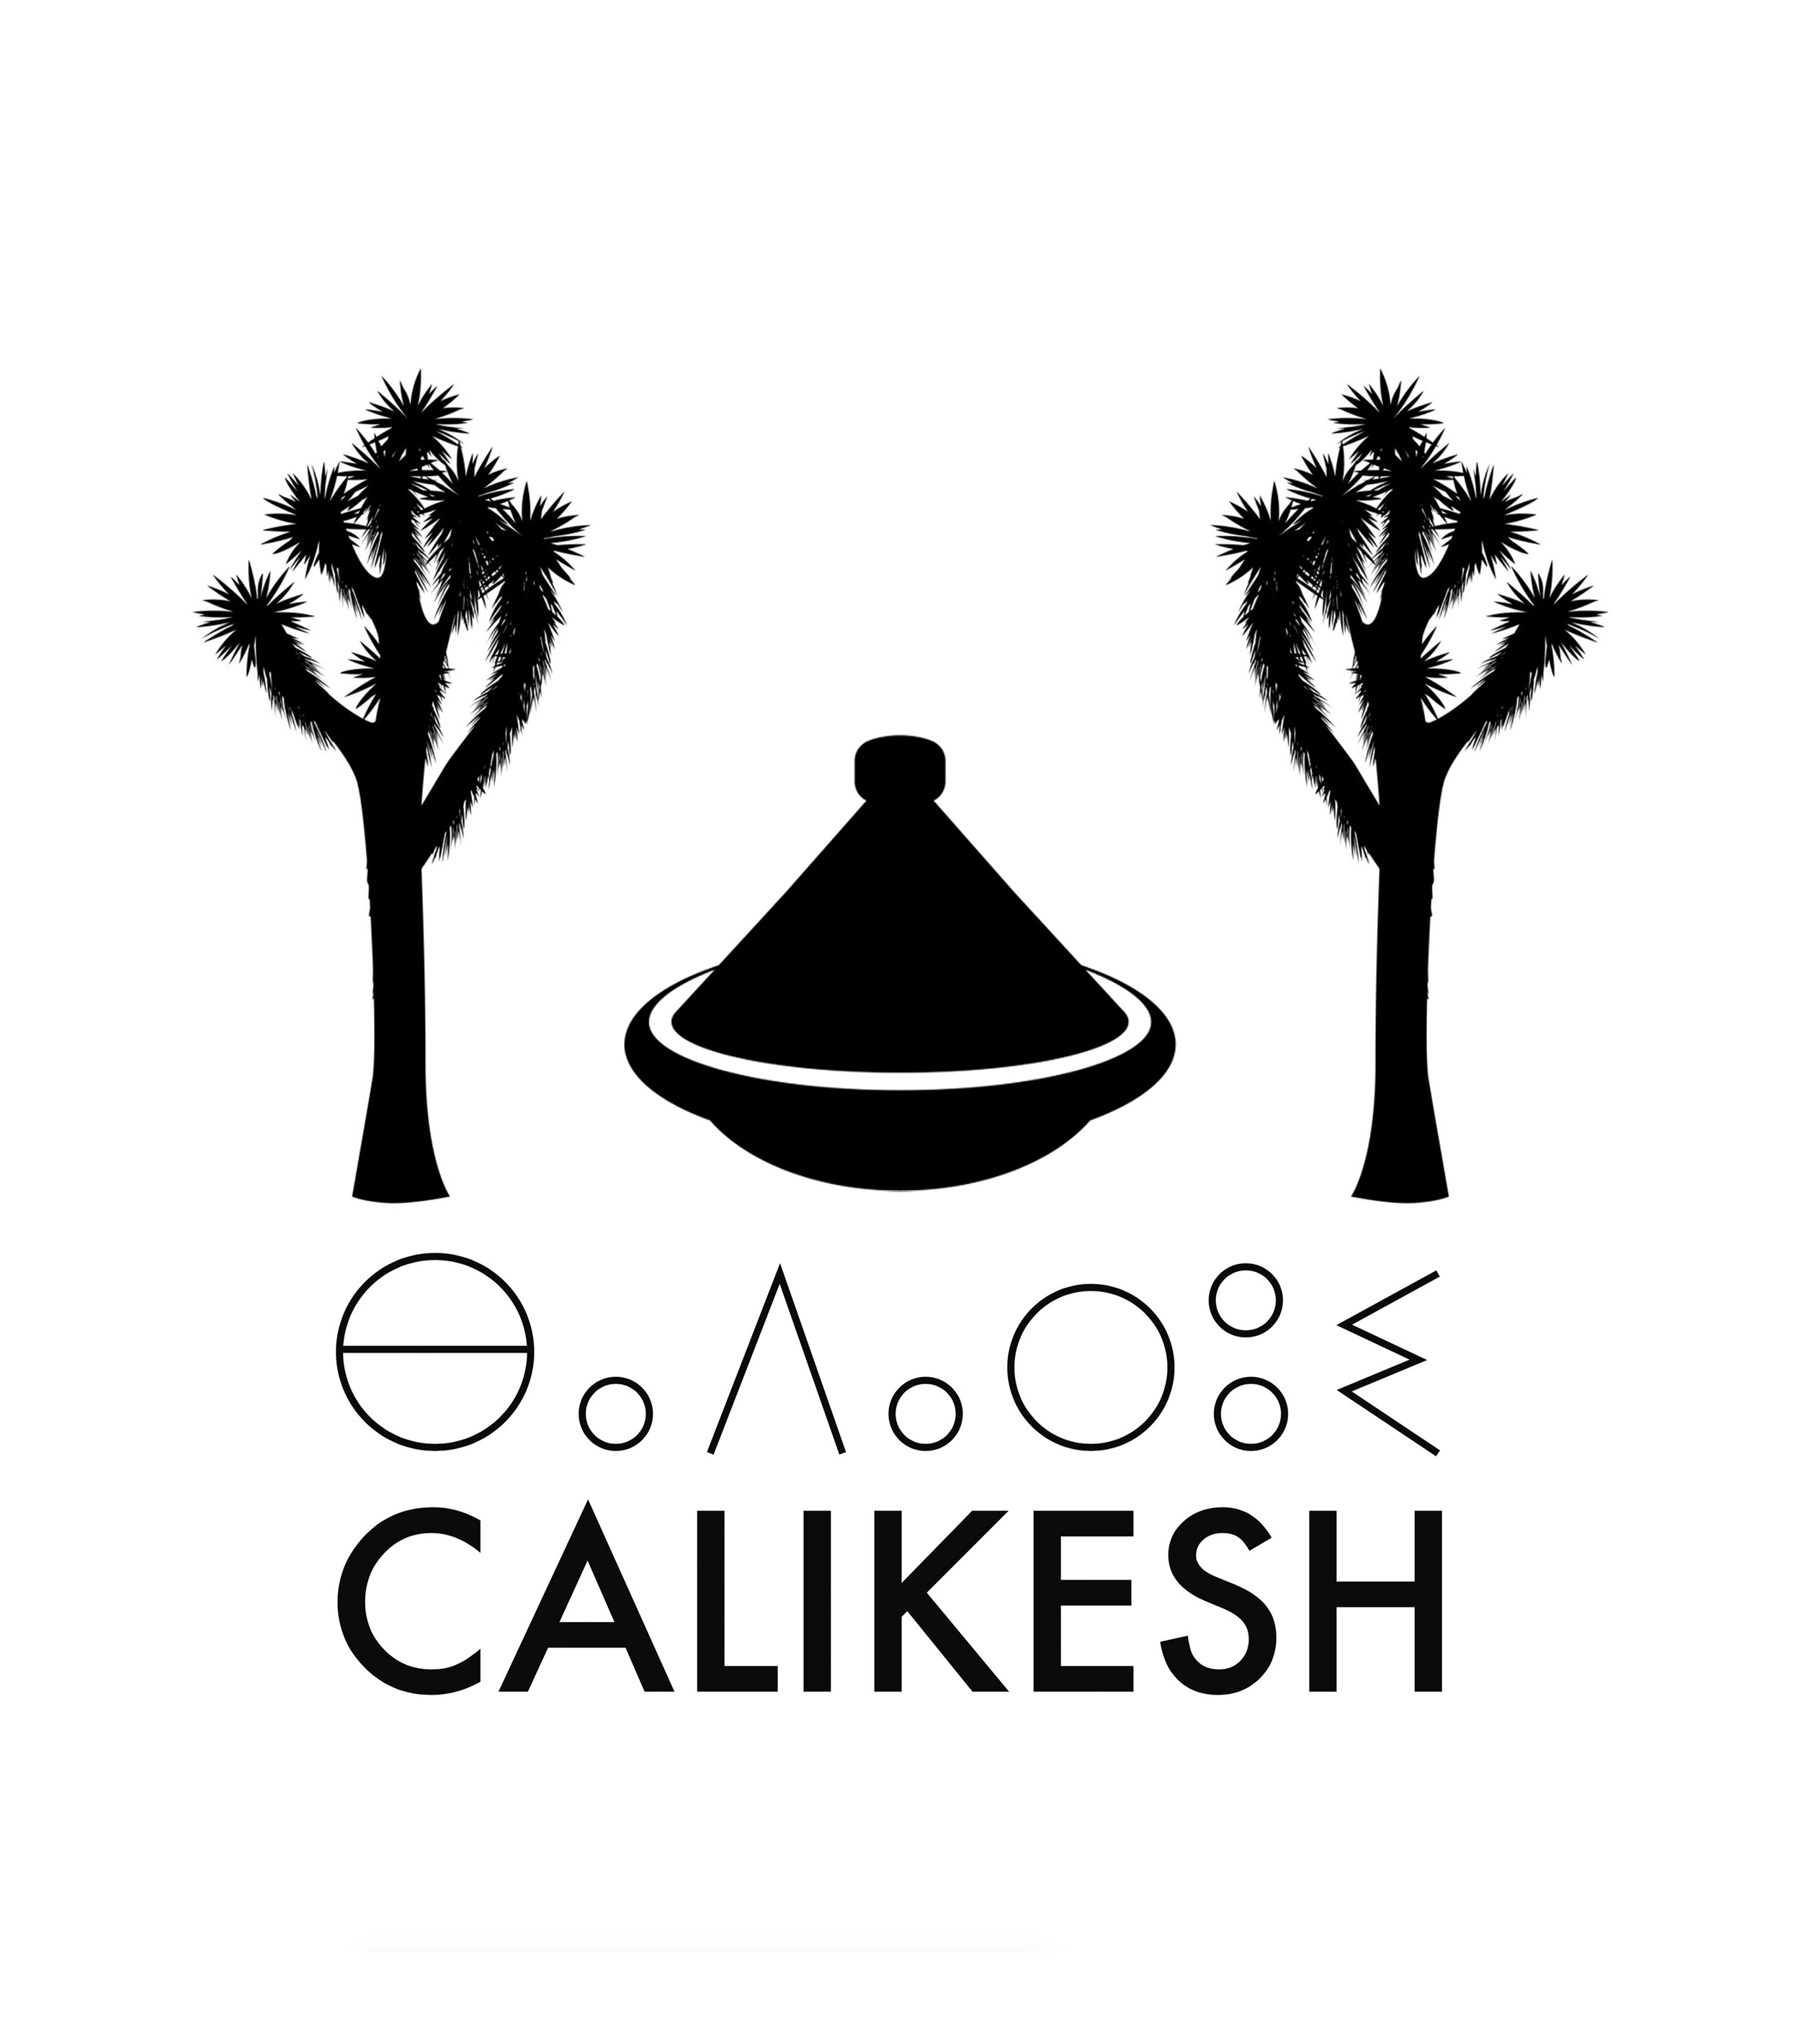 Calikesh